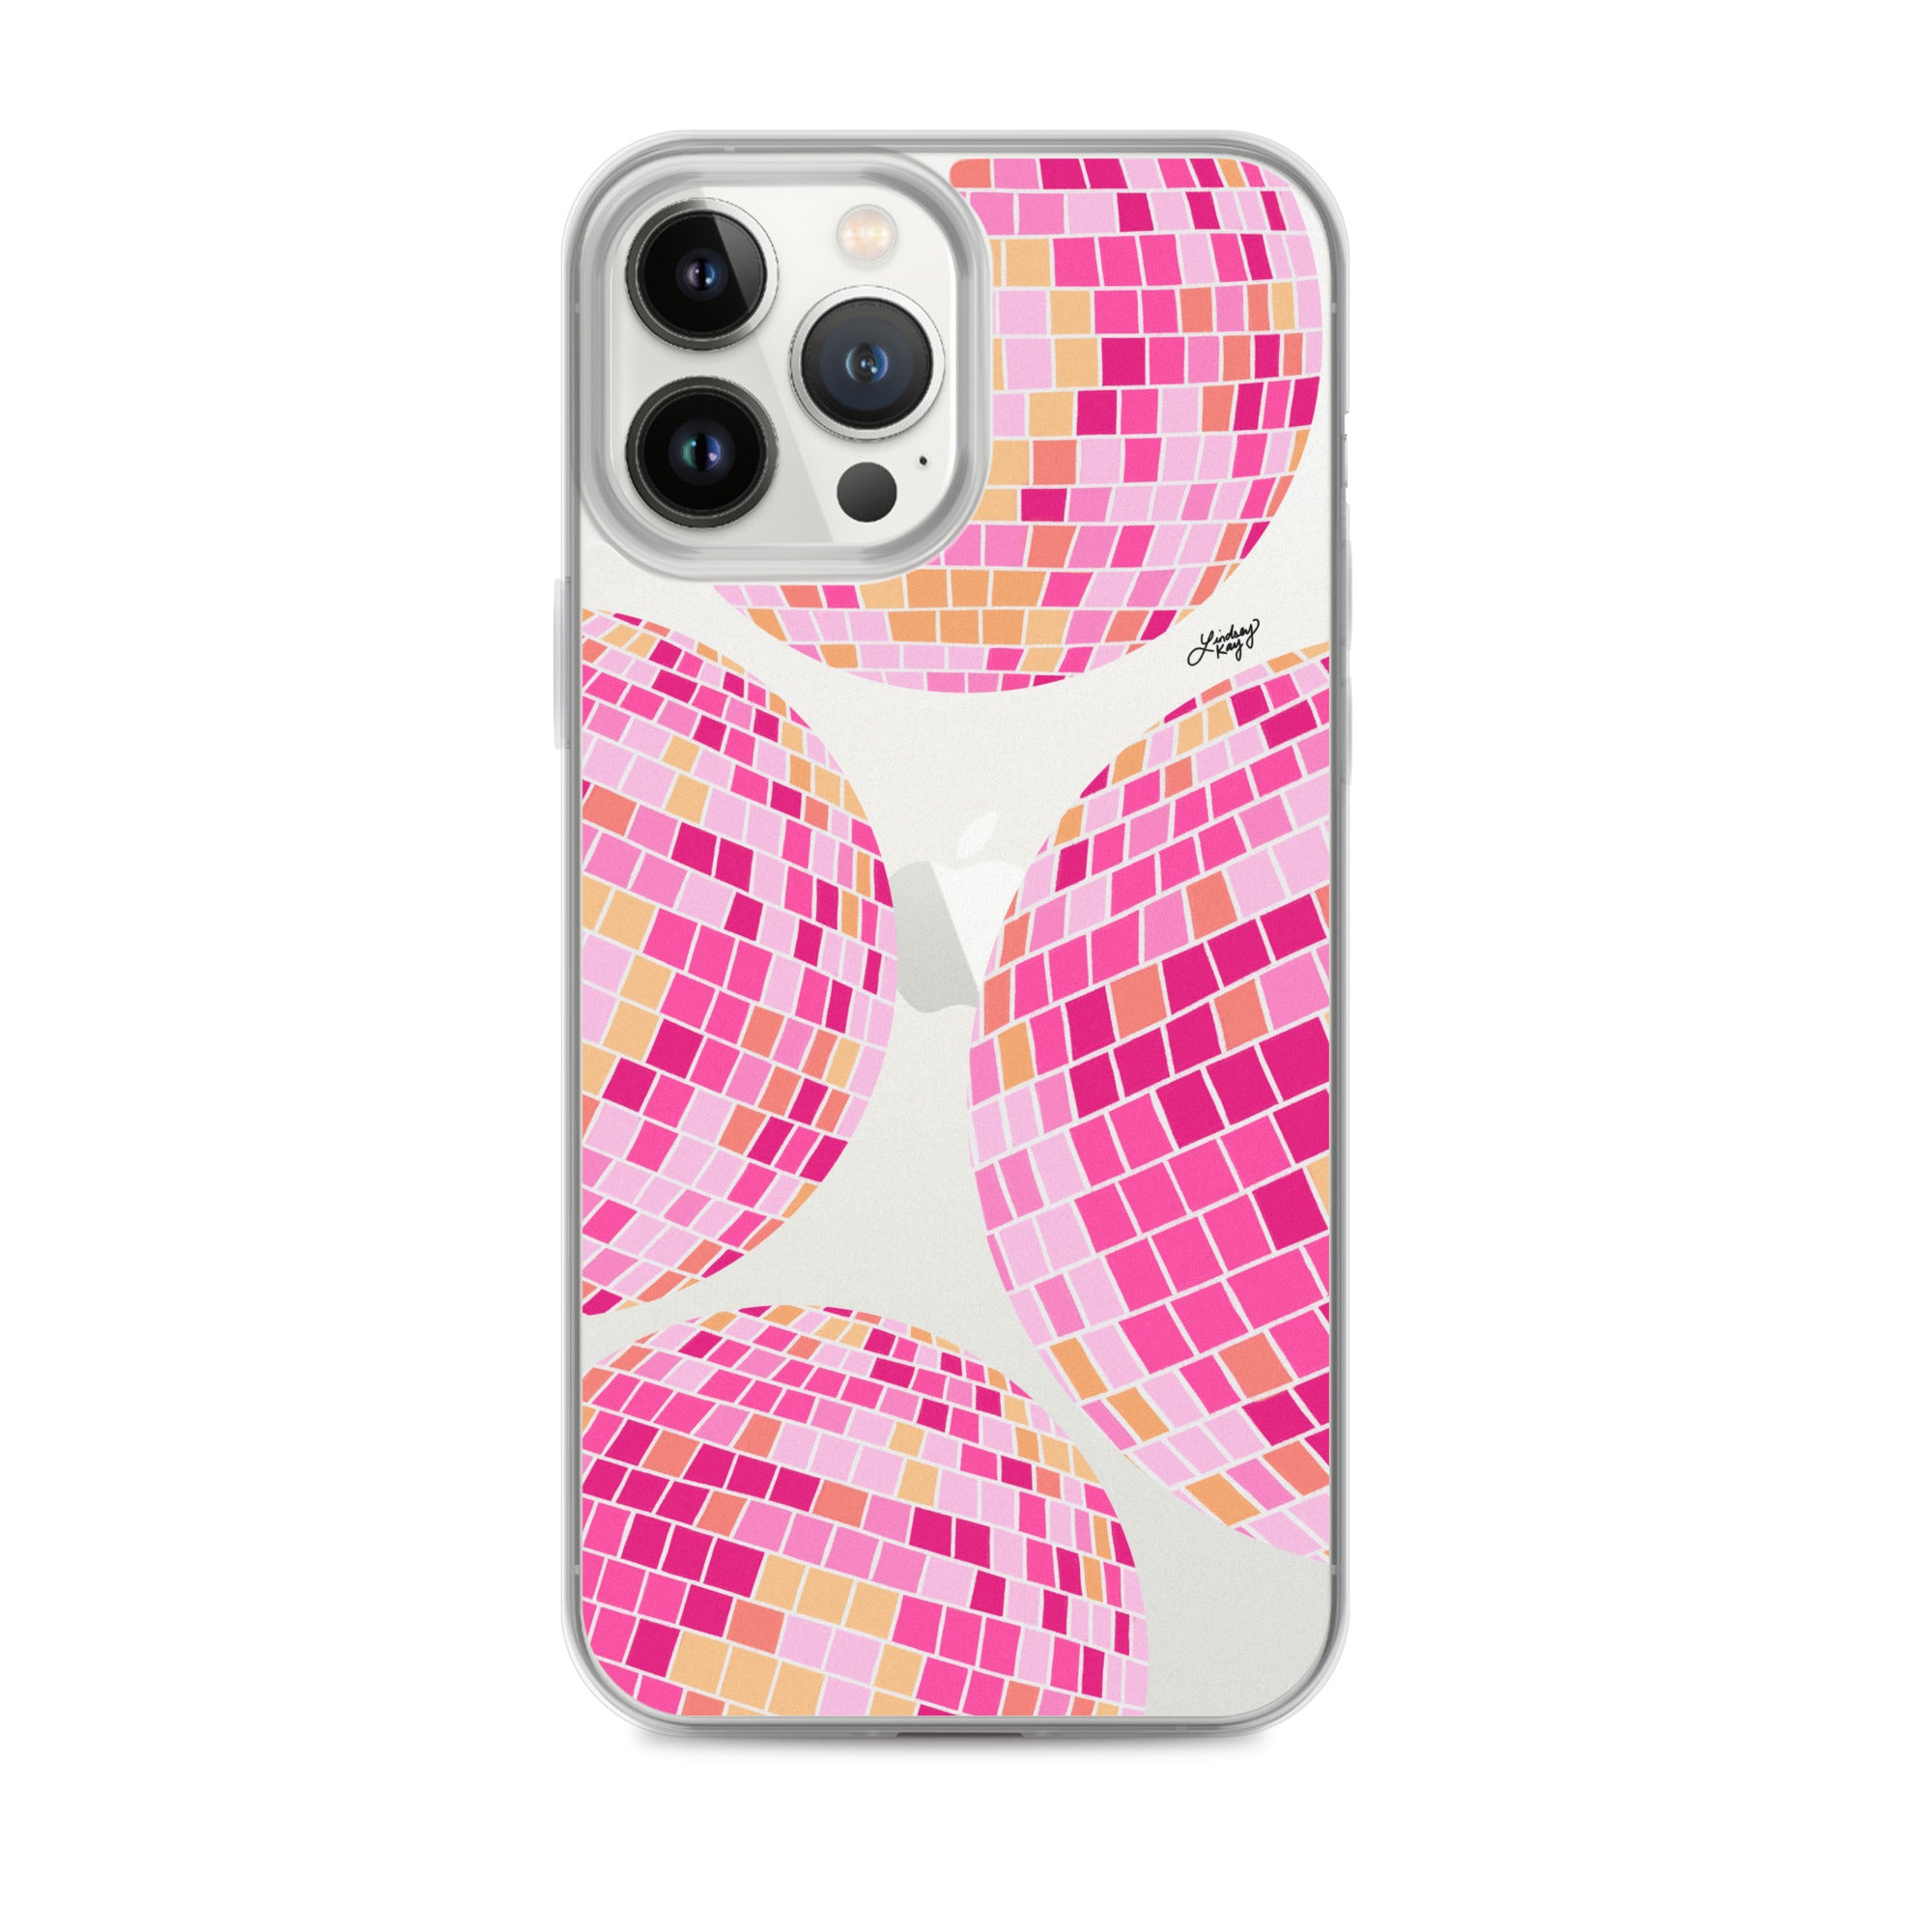 Ilustración de bolas de discoteca rosa/amarilla - Funda transparente para iPhone®